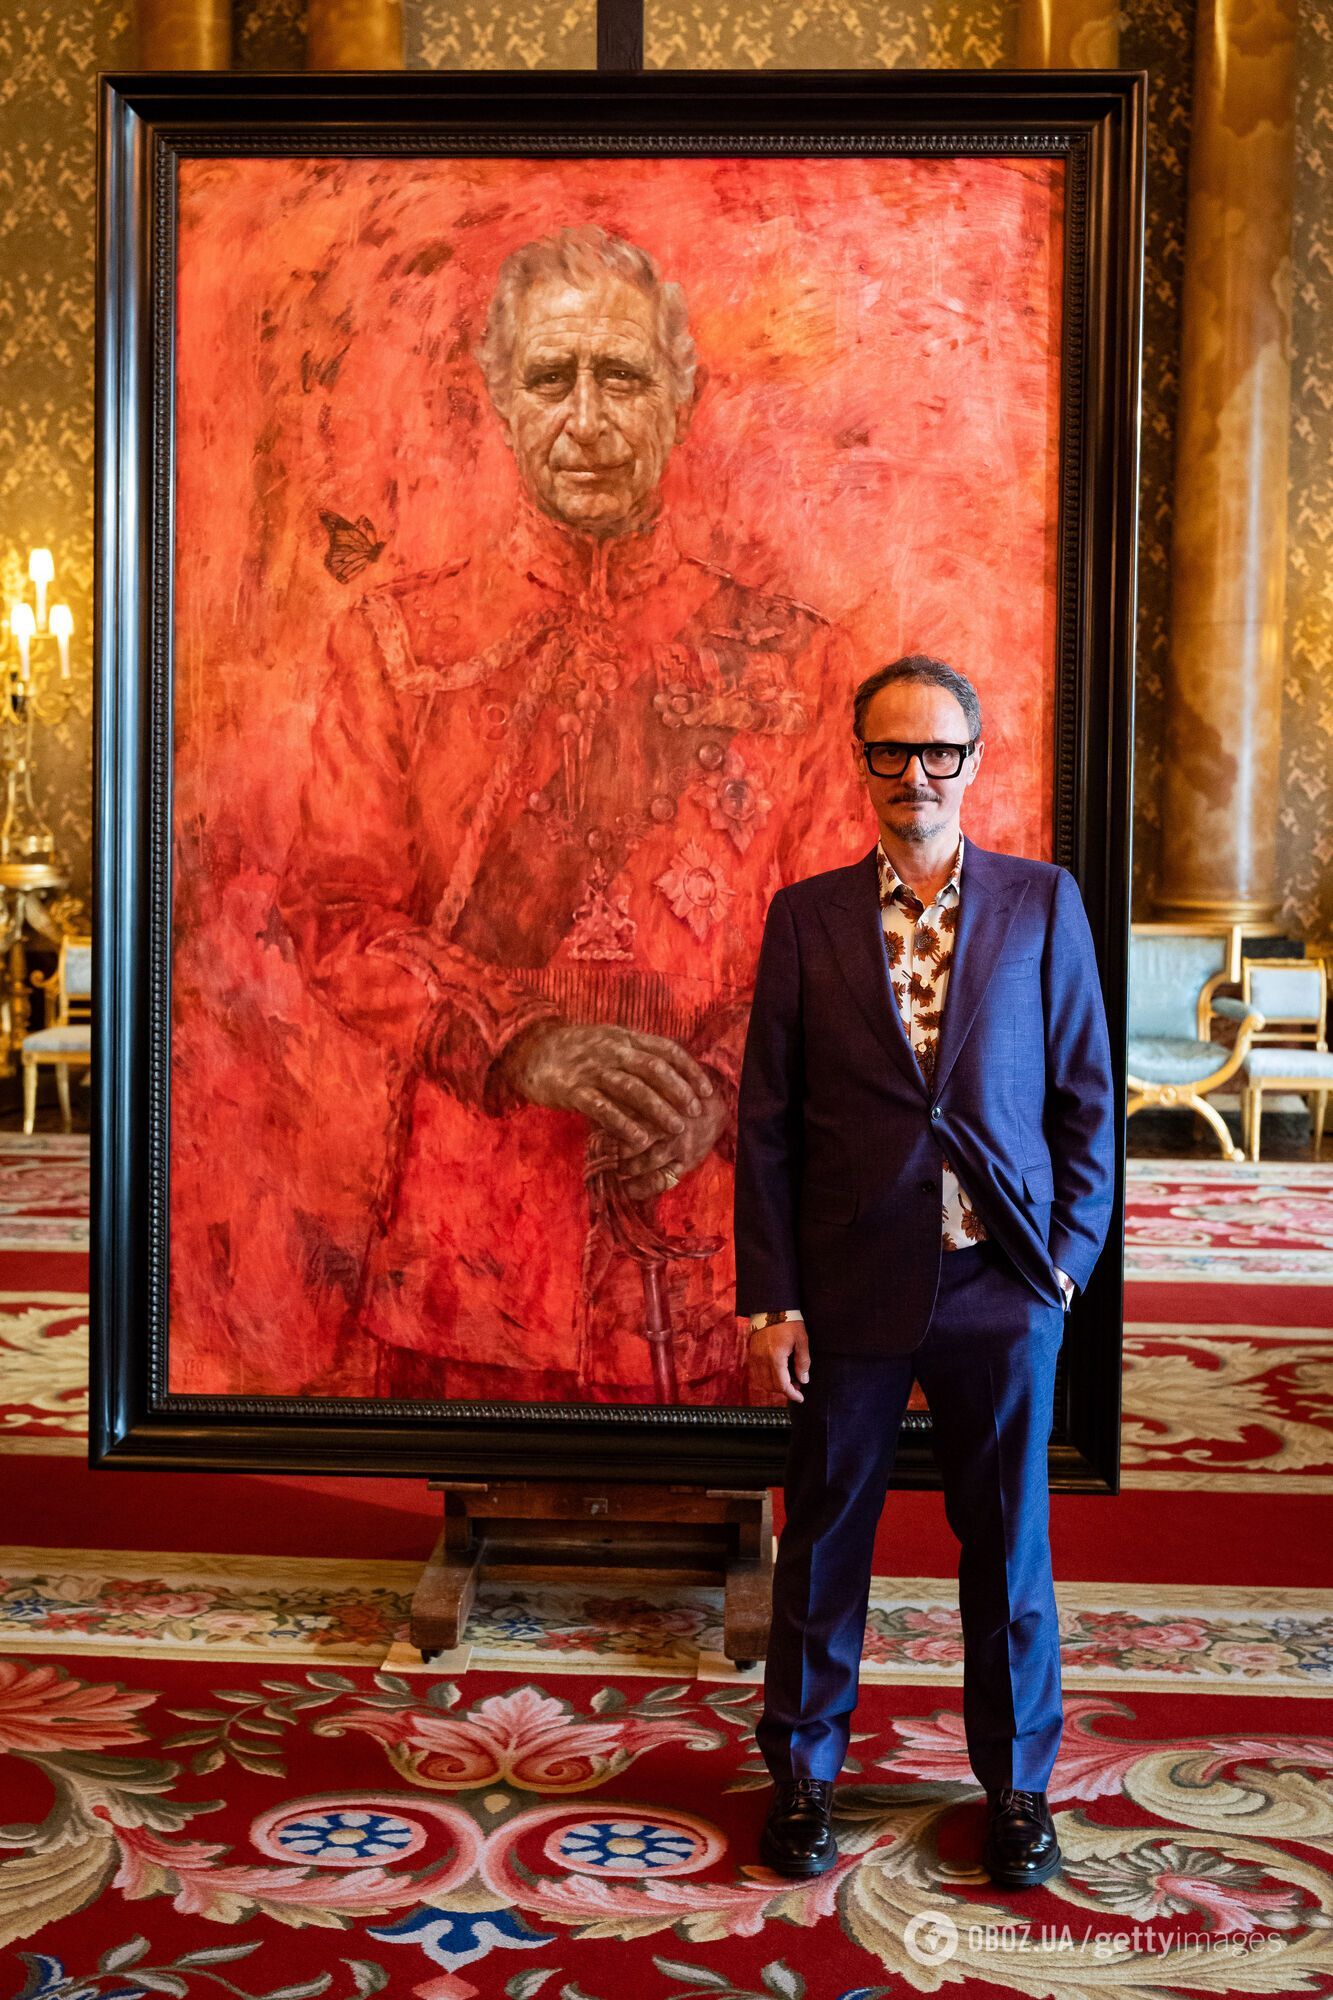 "Будто разлили варенье": официальный портрет короля Чарльза вызвал дискуссию в сети. Фото